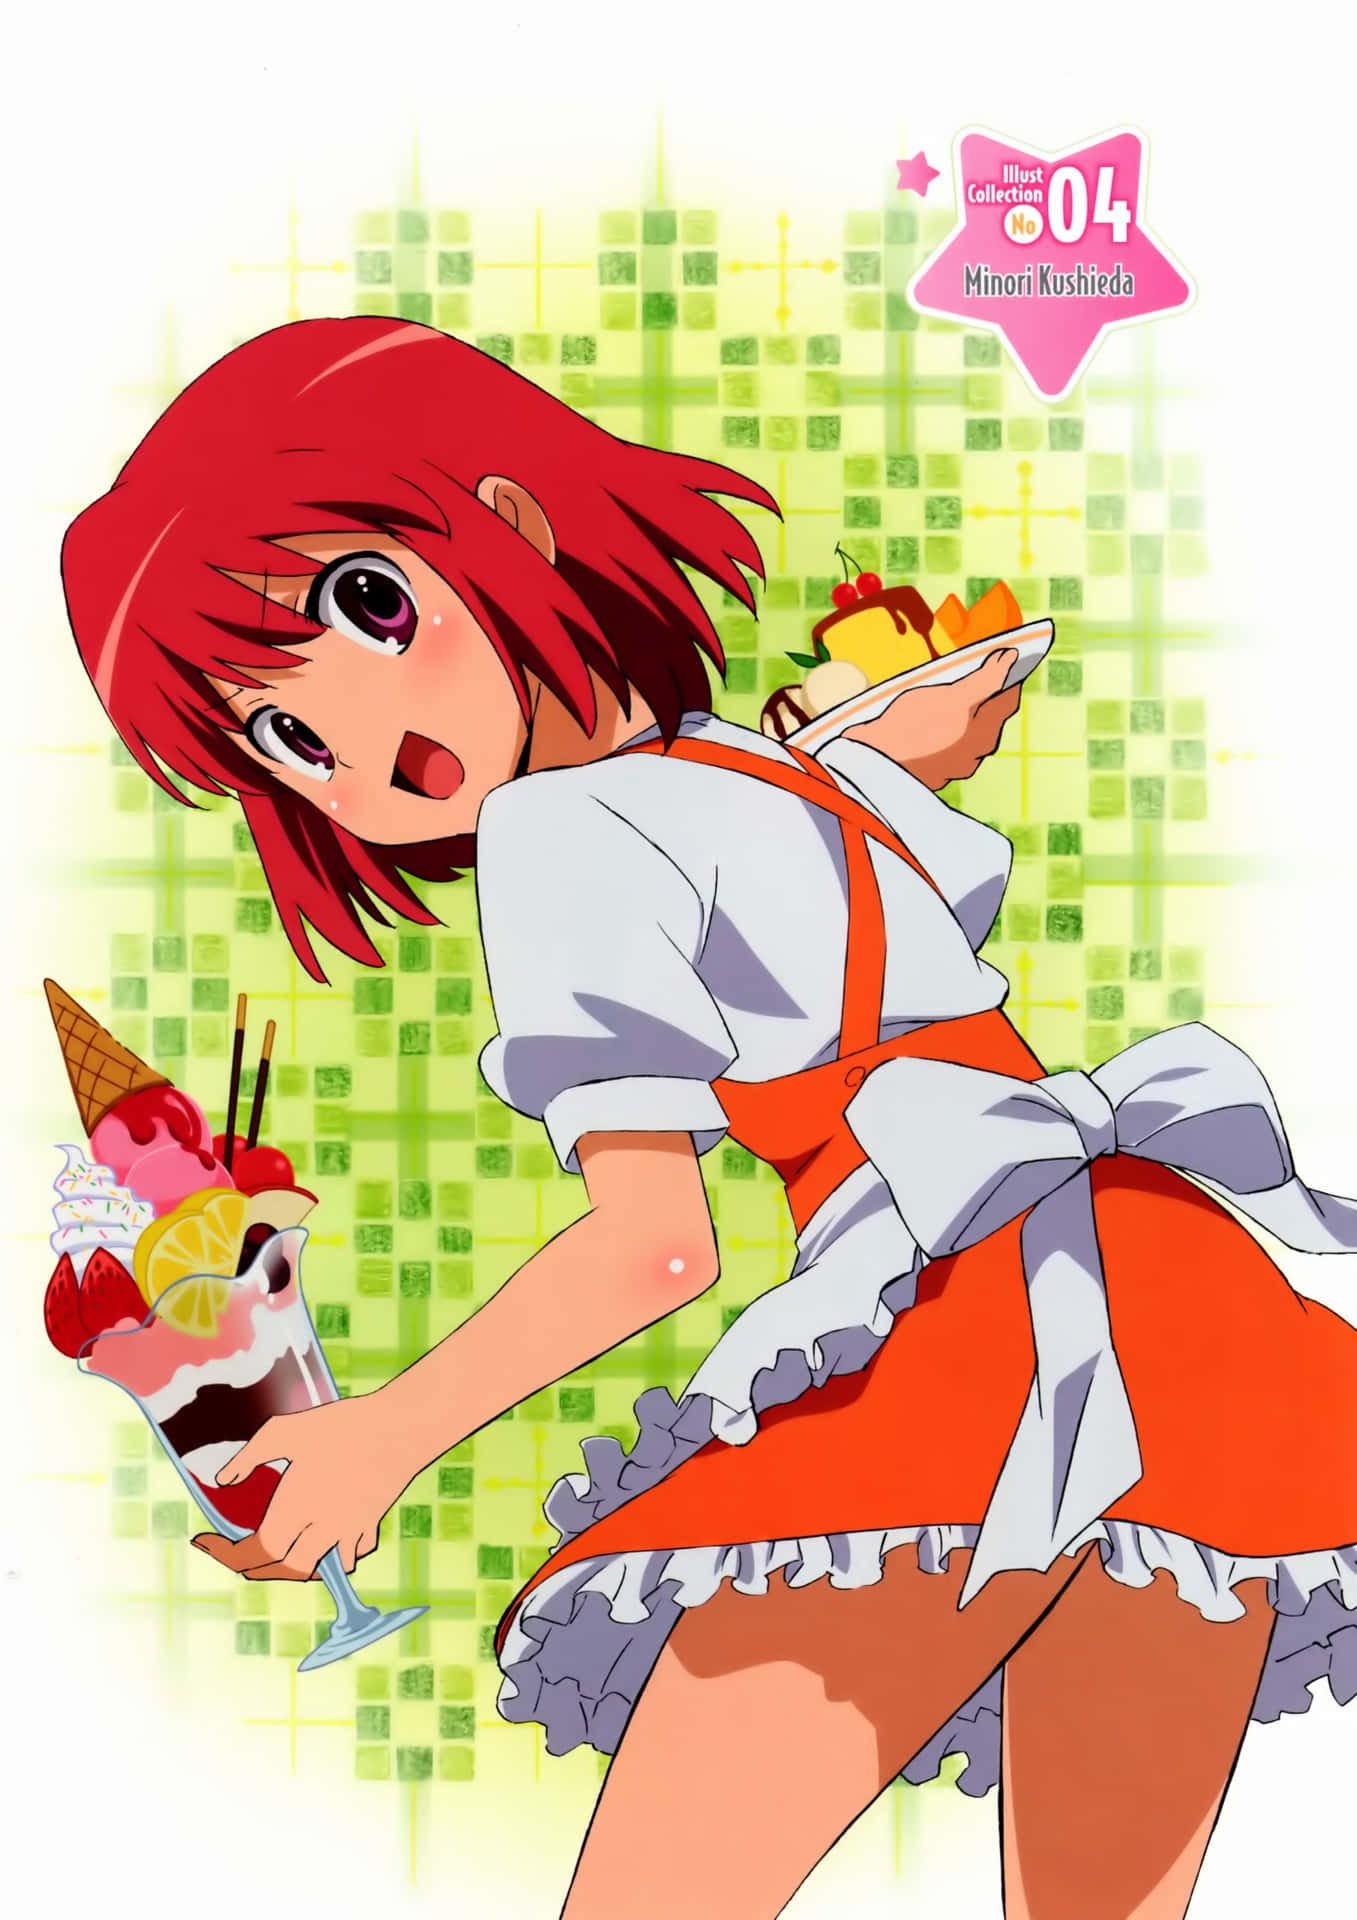 Minori Kushieda, the cheerful and quirky anime character Wallpaper